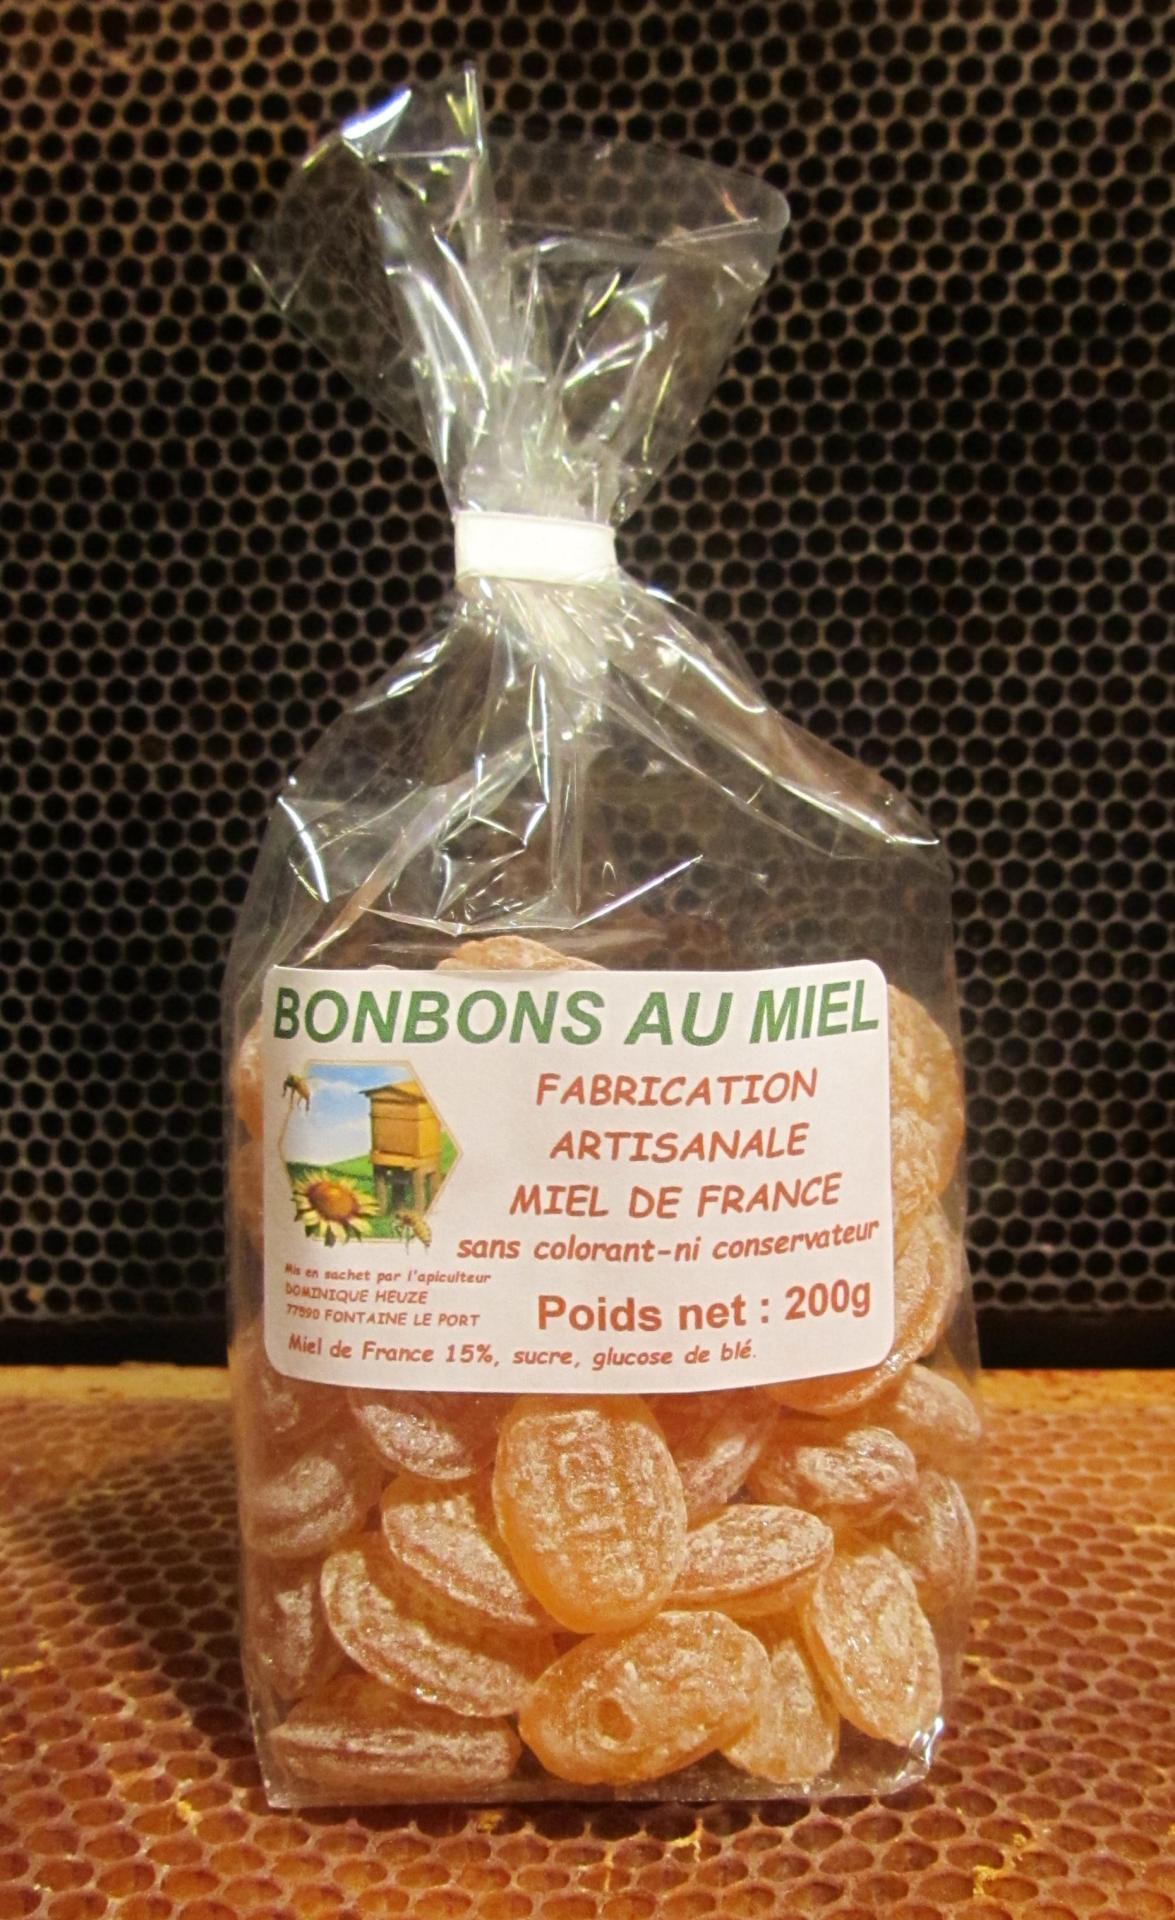 Bonbons miel france1